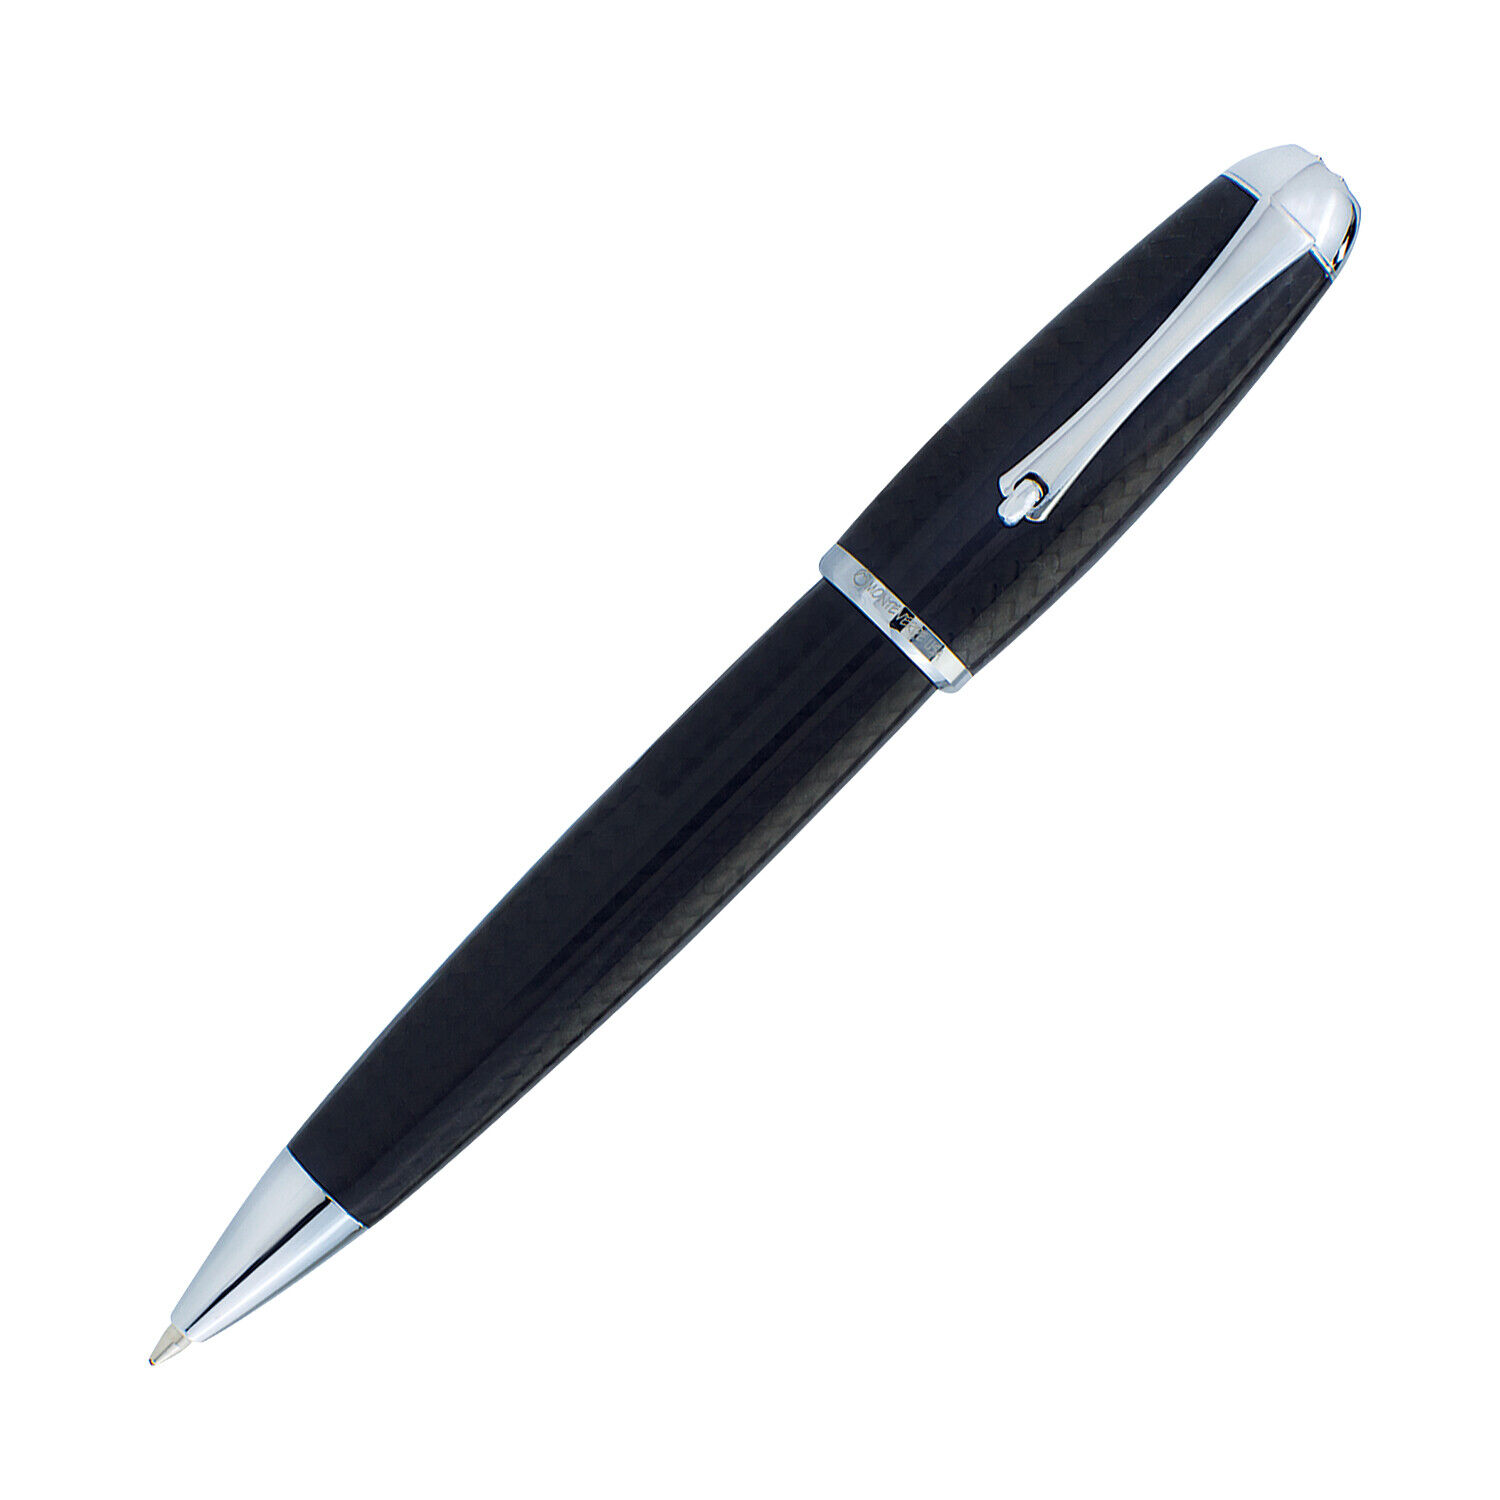 Monteverde Super Mega Ballpoint Pen in Carbon Fiber with Chrome Trim - NEW